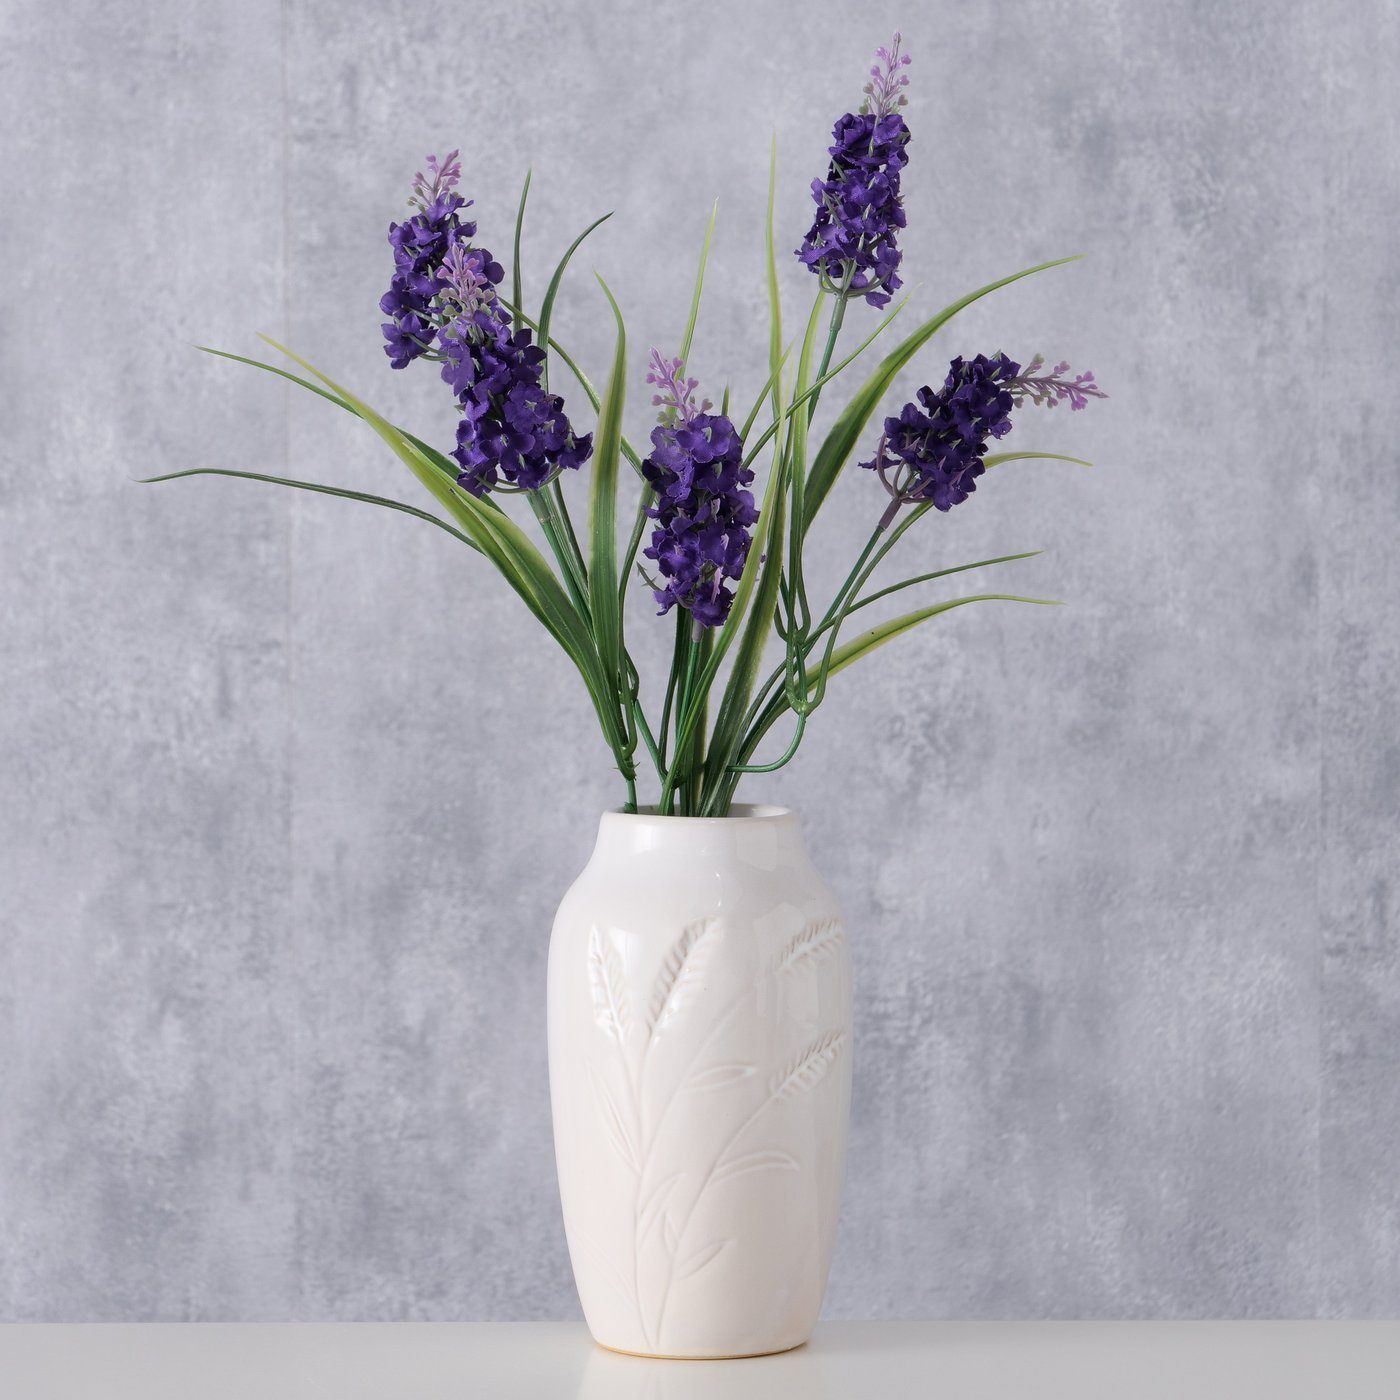 BOLTZE Dekovase "Jenna" aus Porzellan in weiß, Vase Blumenvase